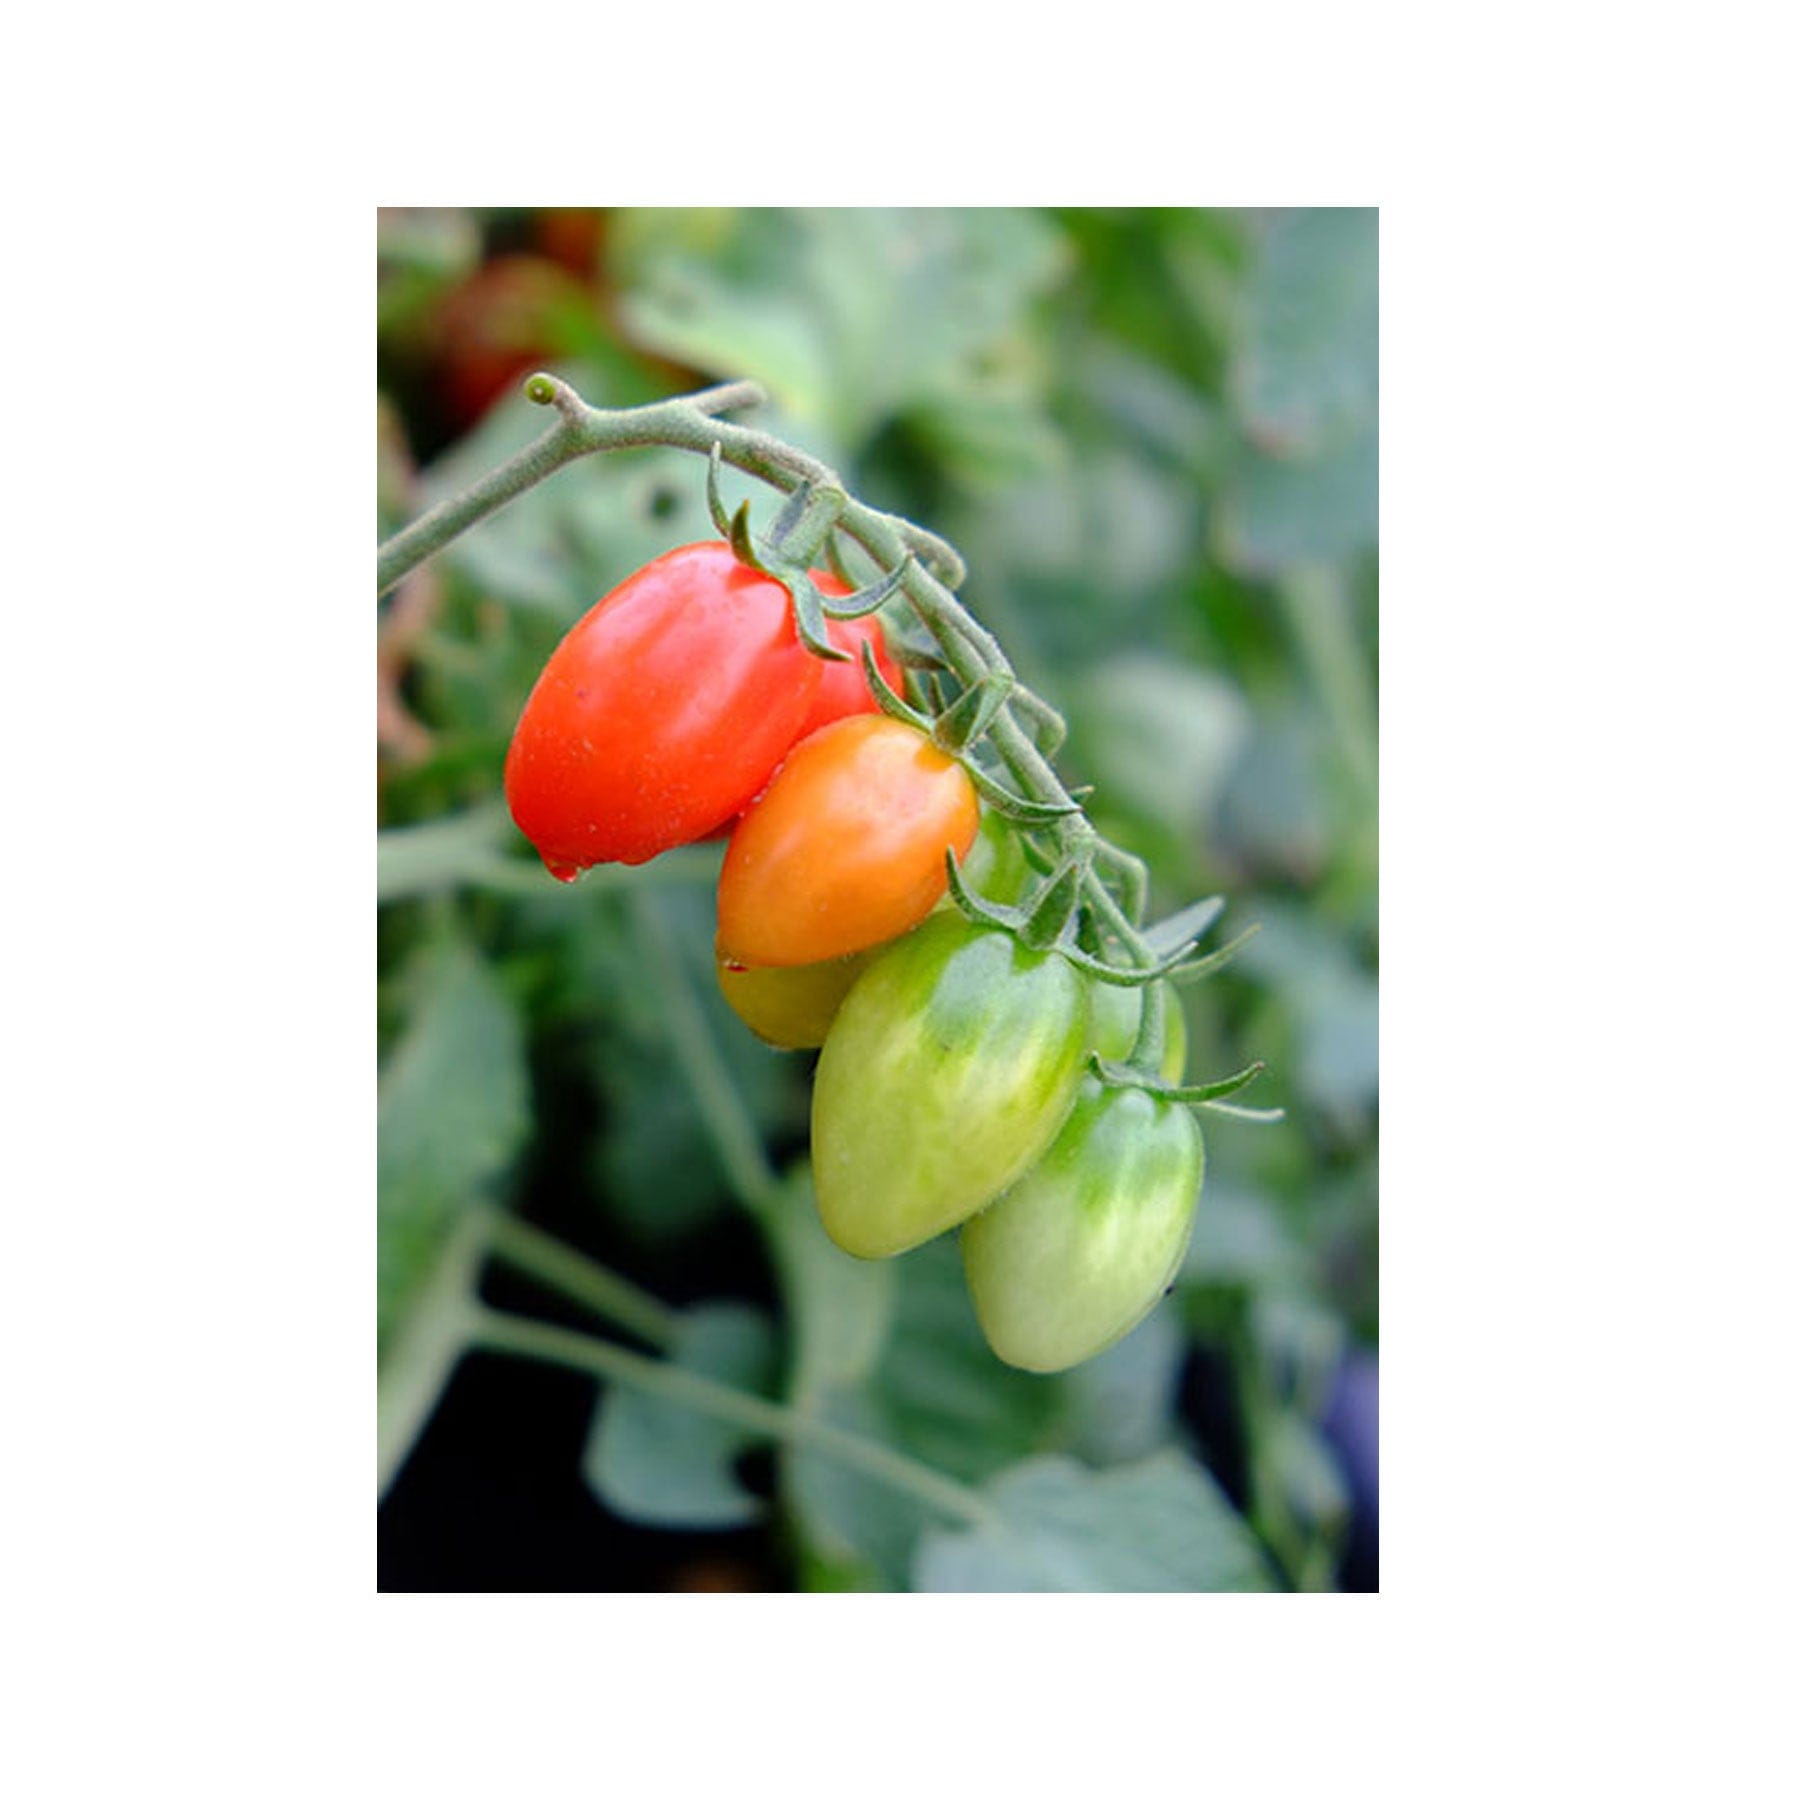 Celano tomato seeds